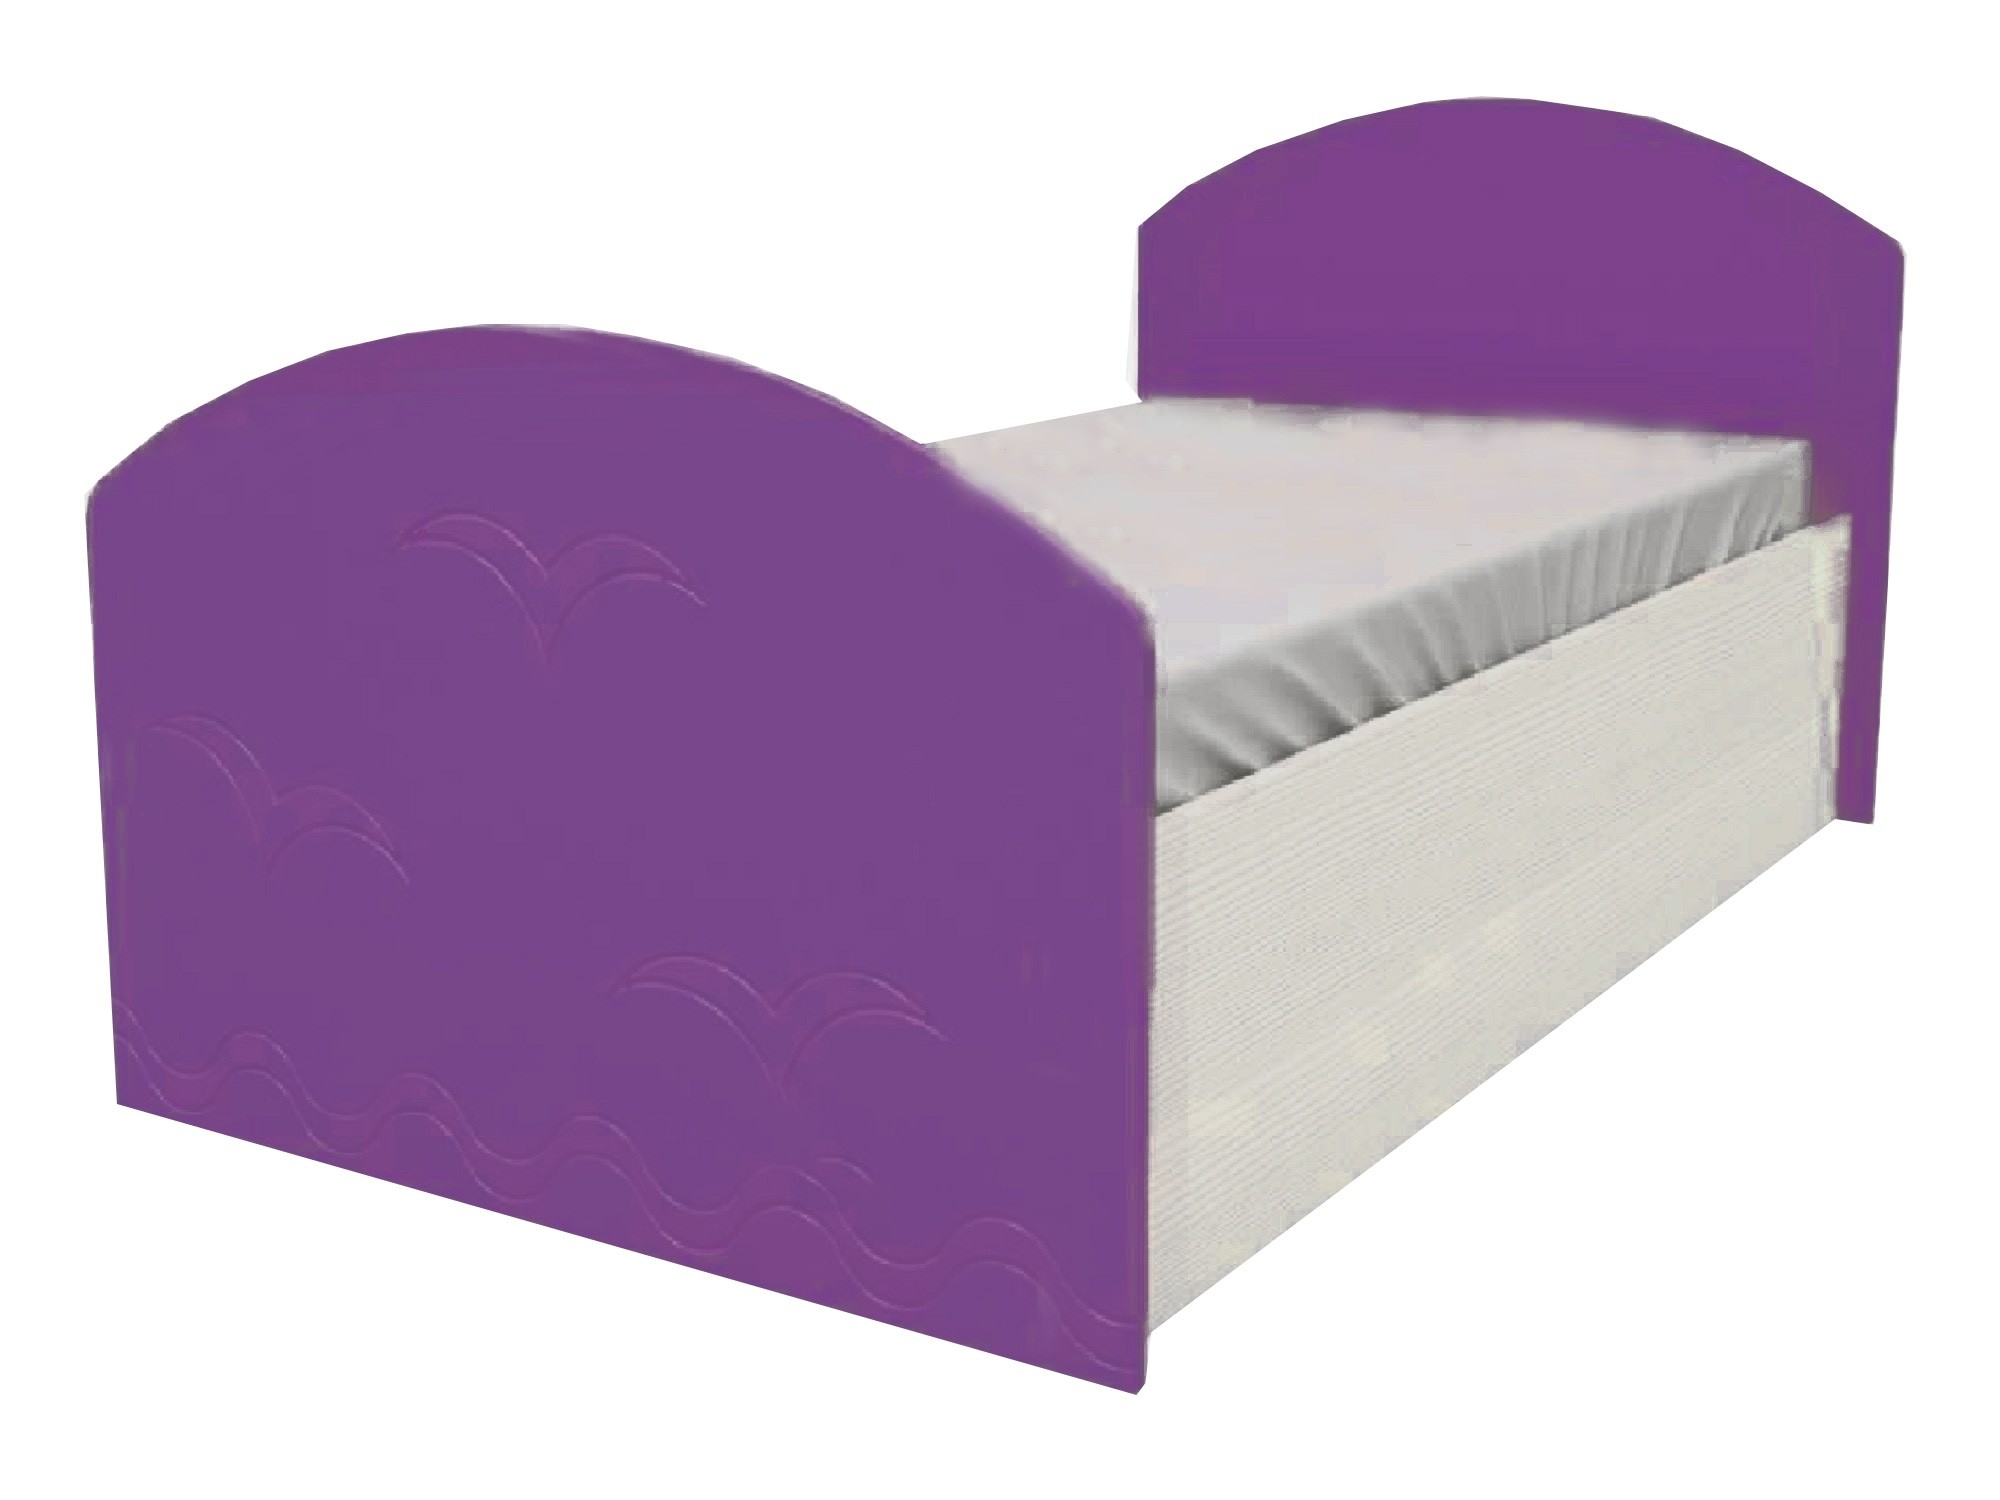 Юниор-2 Детская кровать 80, металлик (Фиолетовый металлик, Дуб белёный) Дуб белёный, МДФ, ЛДСП юниор 2 детская кровать 80 металлик фиолетовый металлик дуб белёный фиолетовый металлик мдф лдсп